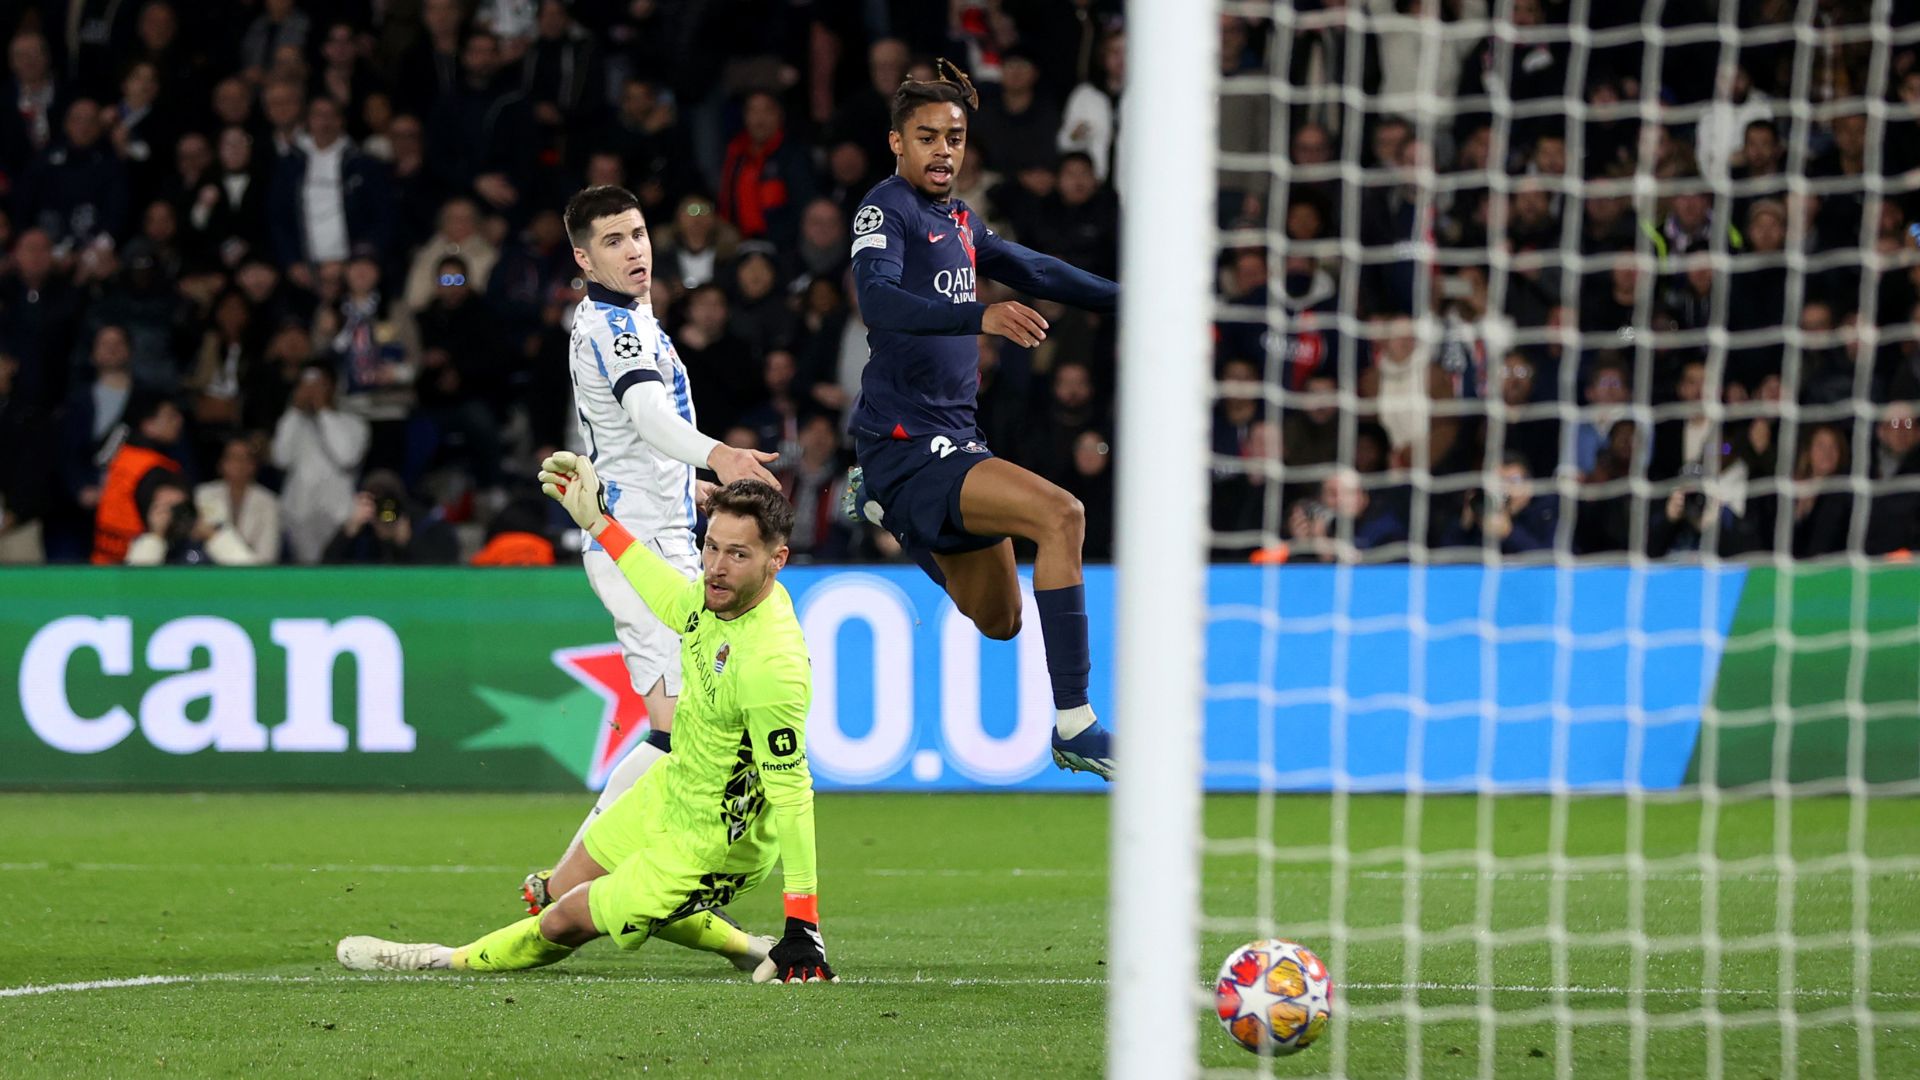 Momento do segundo gol do PSG, marcado por Barcola (Crédito: Getty Images)